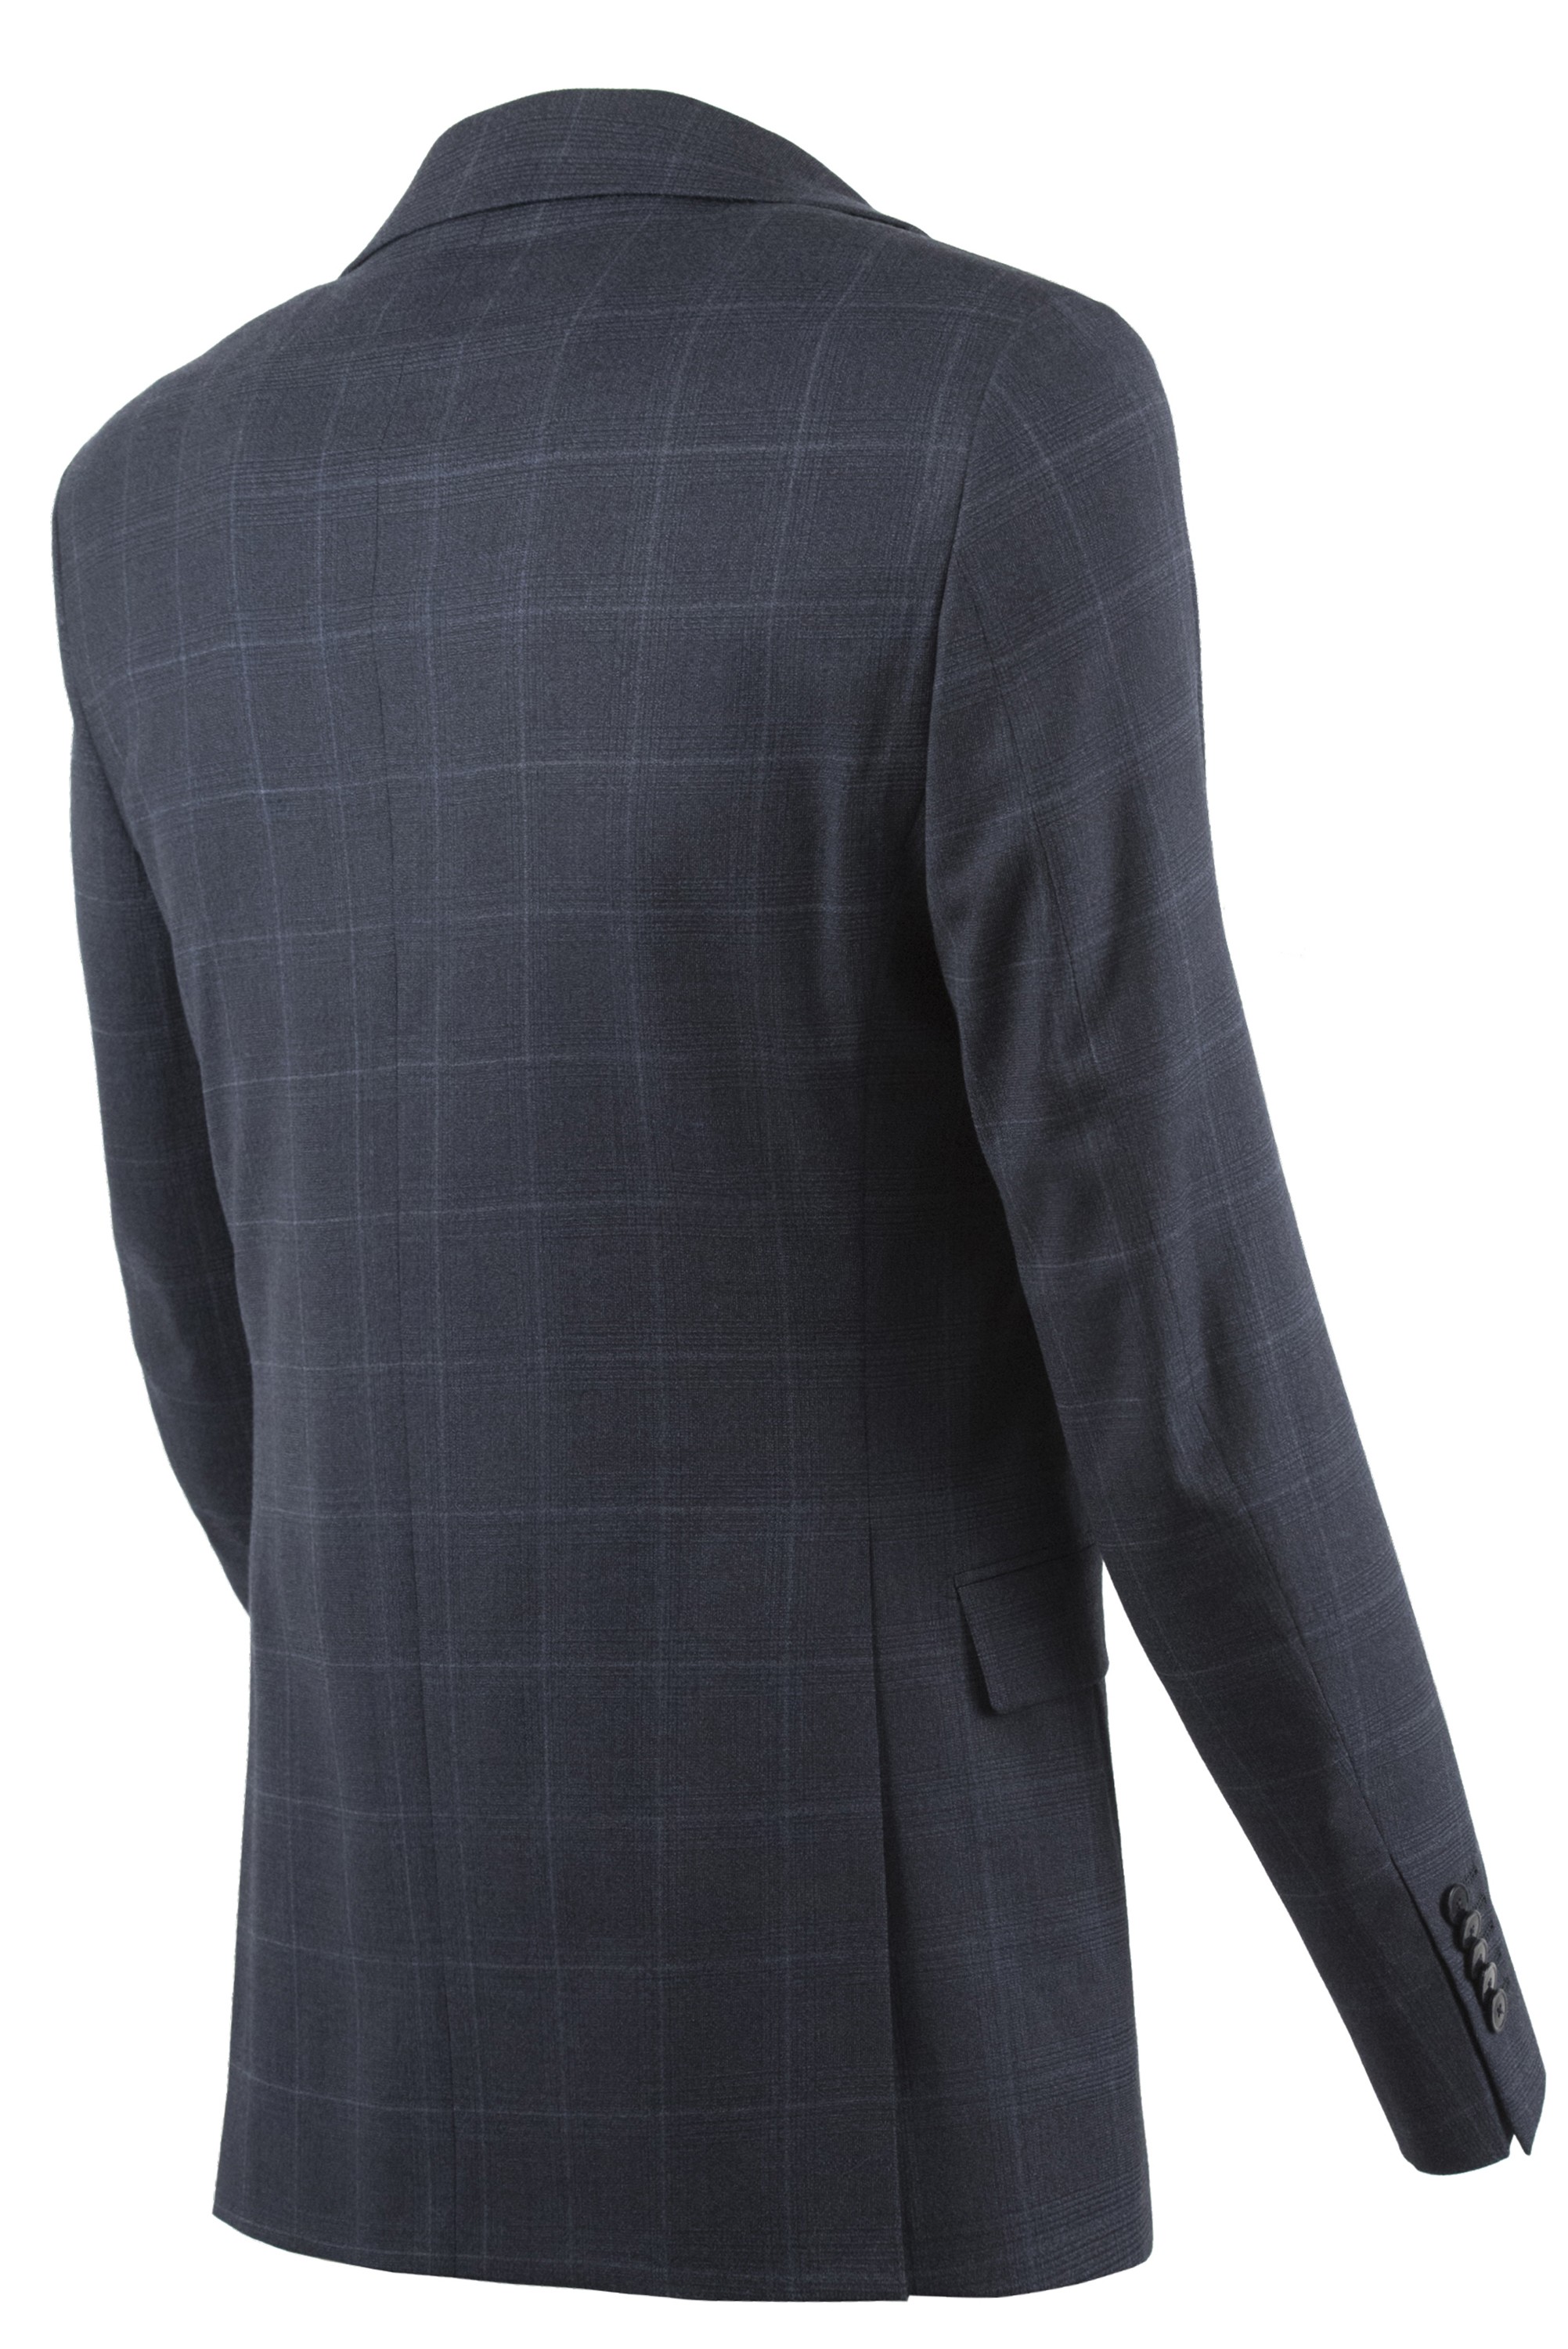 Paoloni Men's Suit 2511A448 181530 88